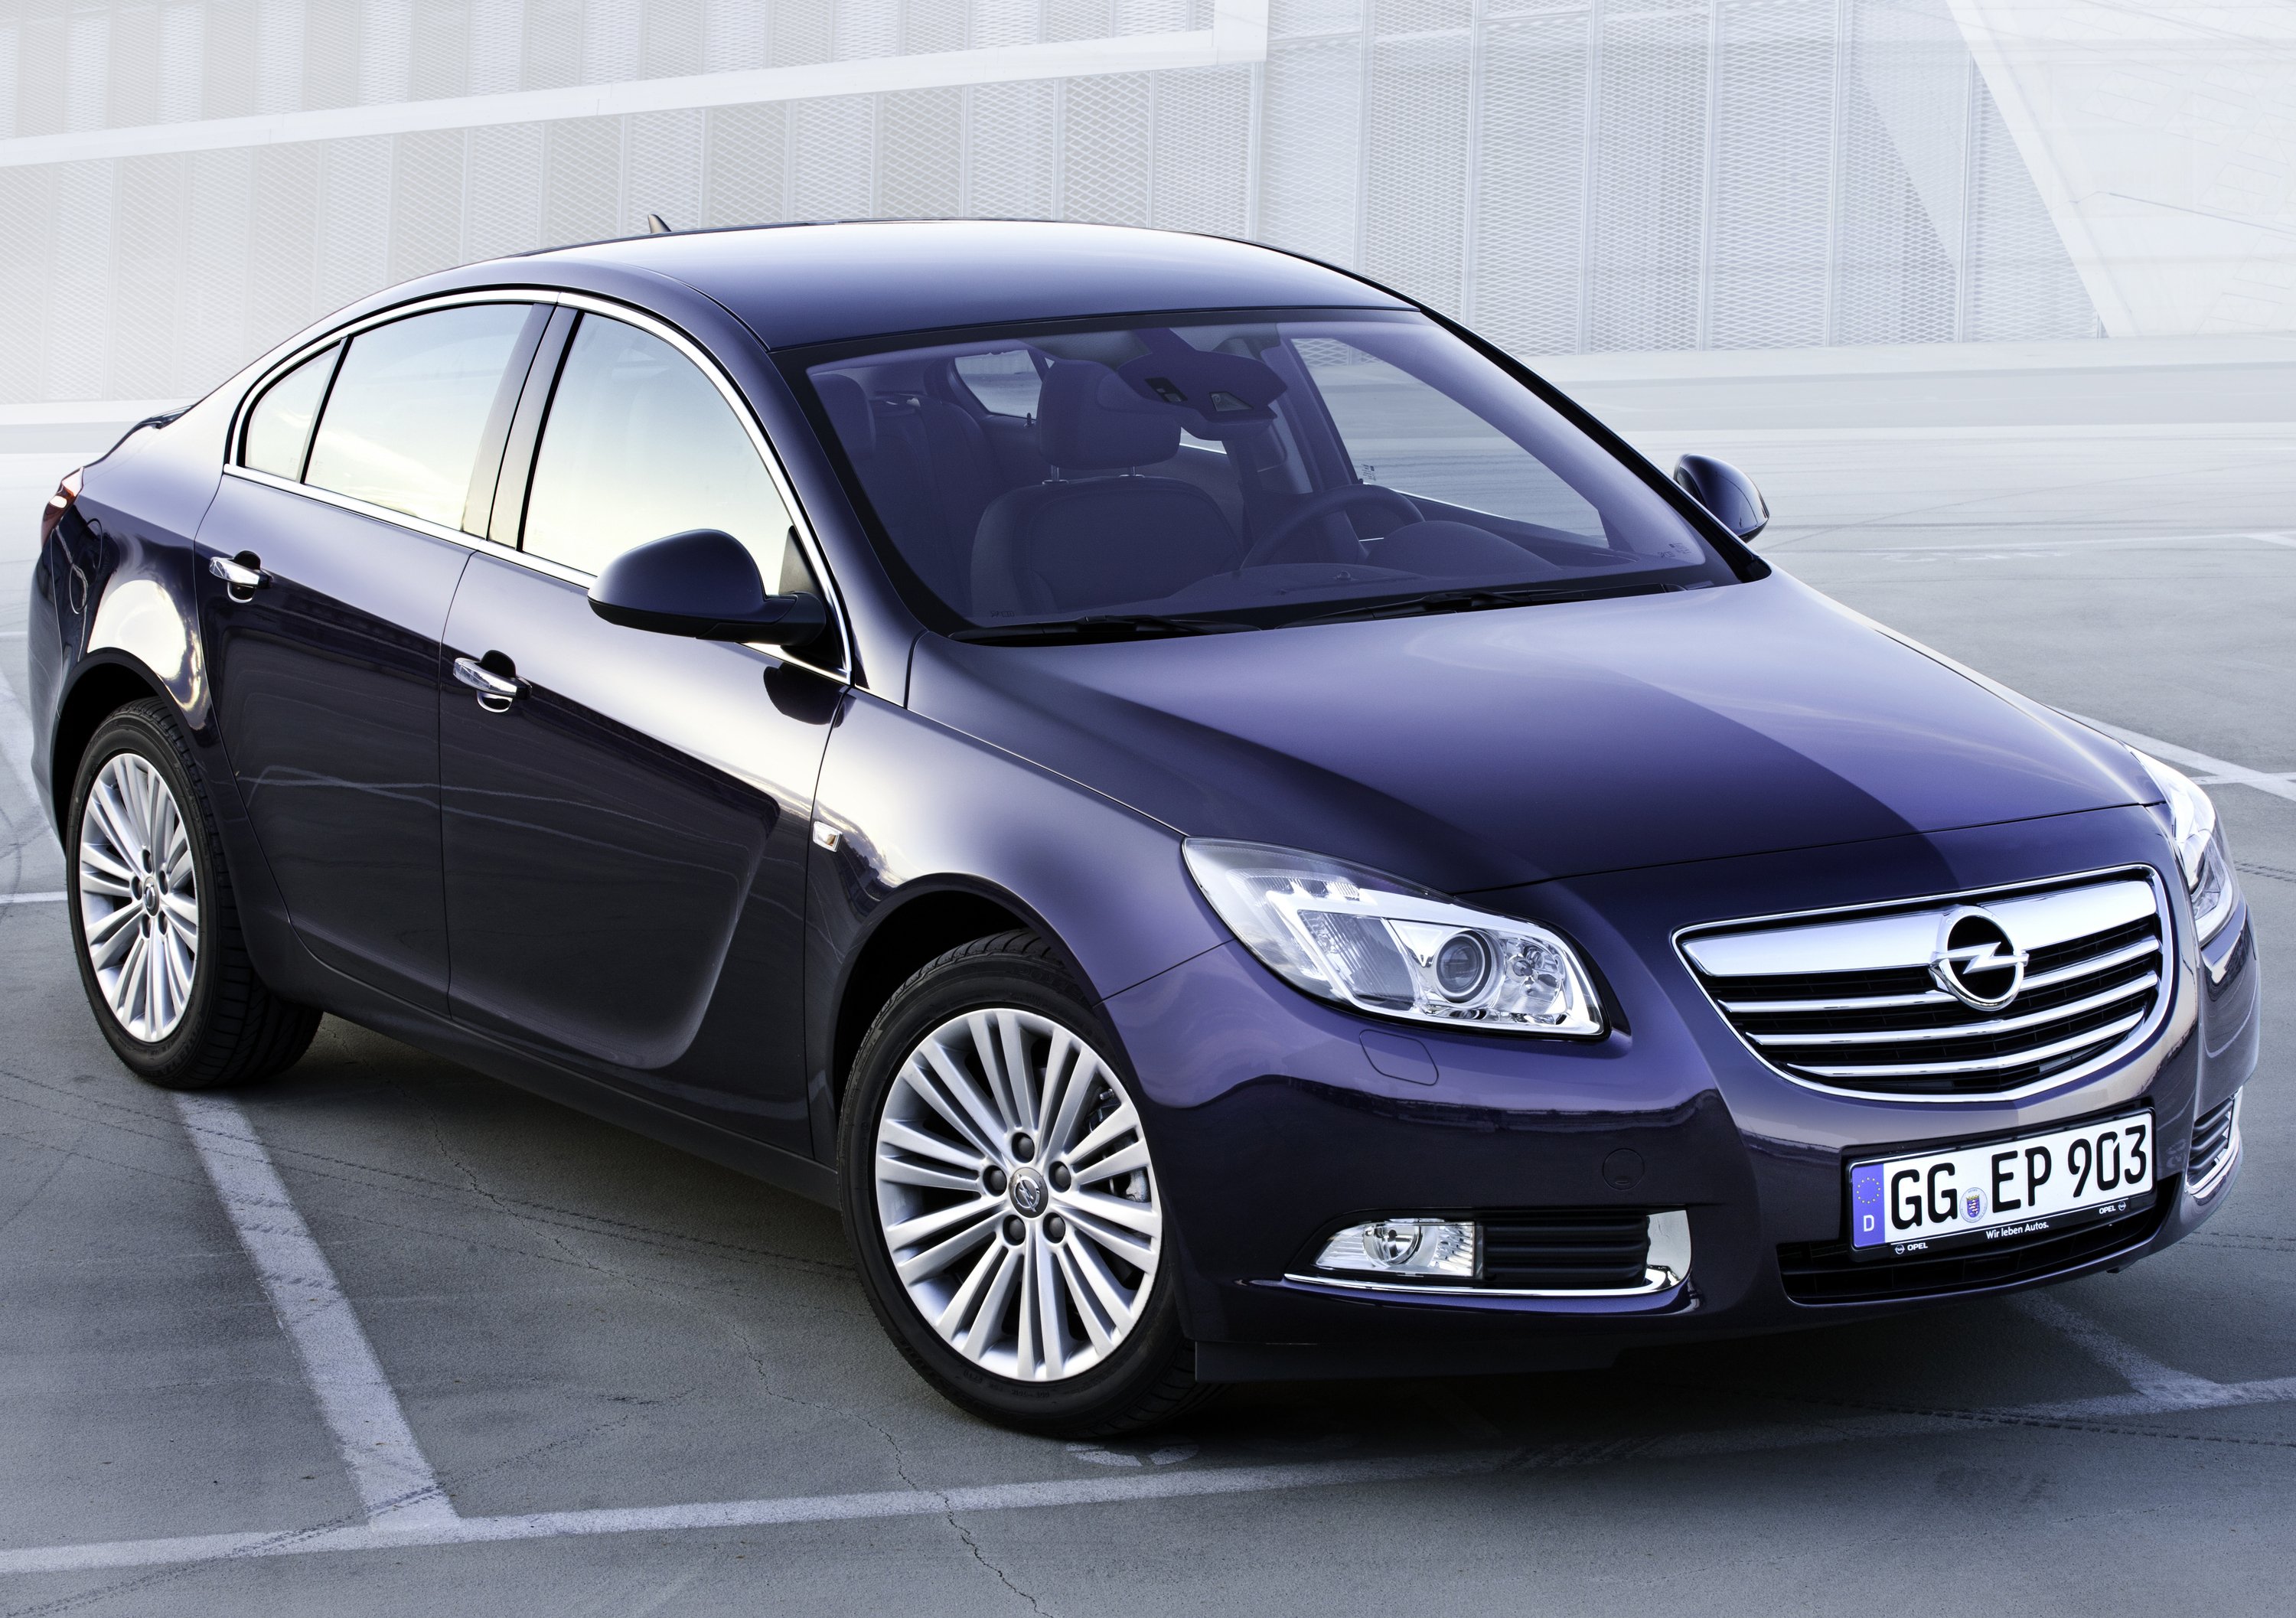 Opel Insigna M.Y. 2012: le novit&agrave; in dettaglio